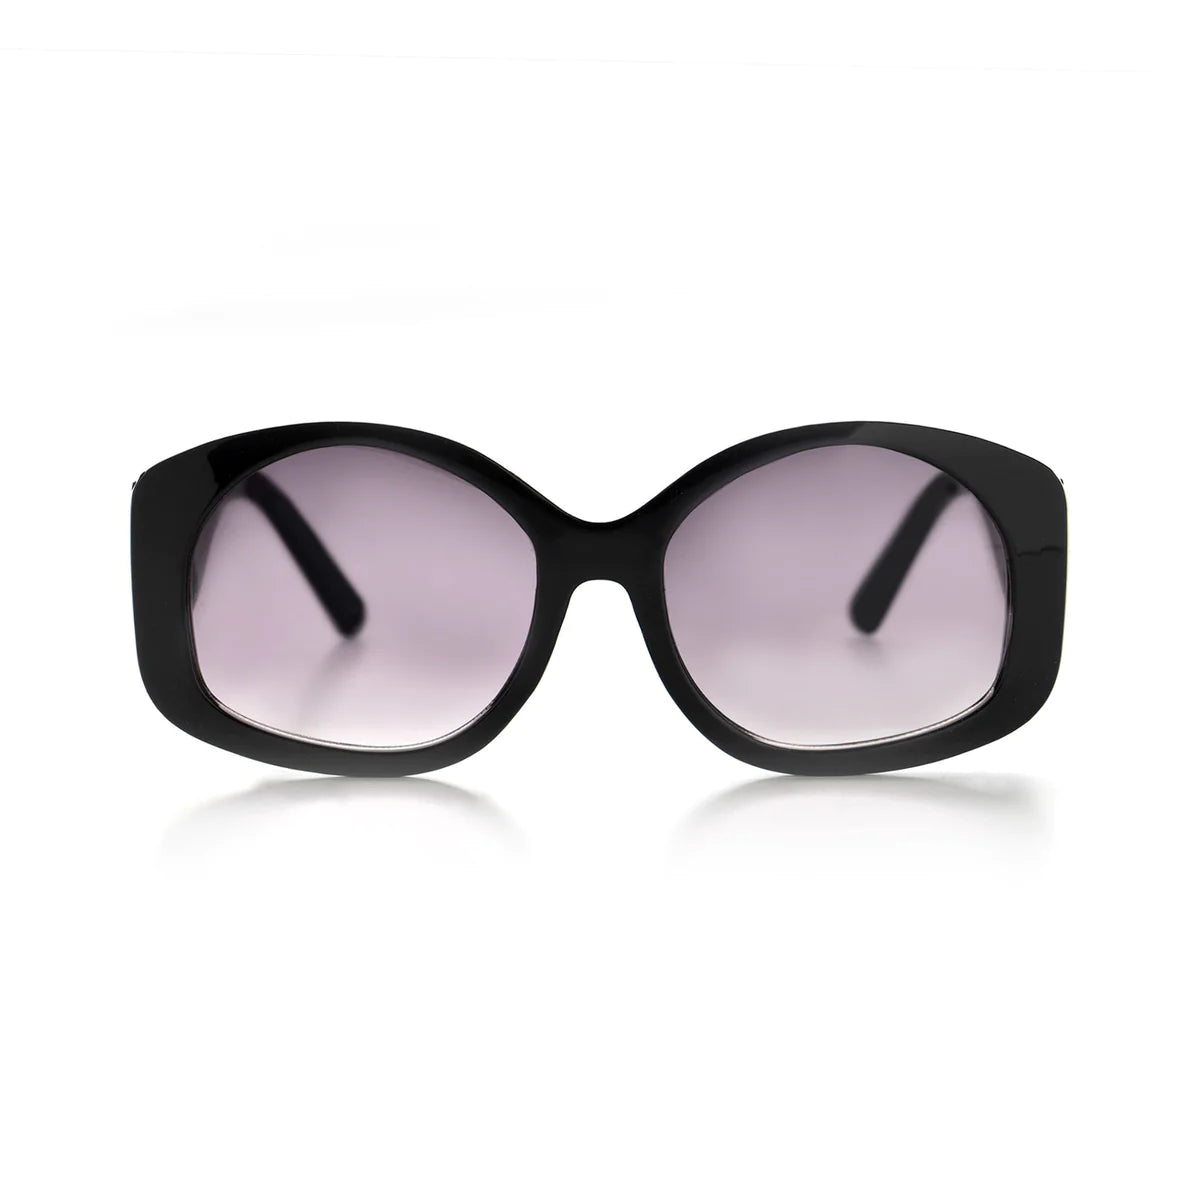 Optimum Optical - Allure Sunglasses